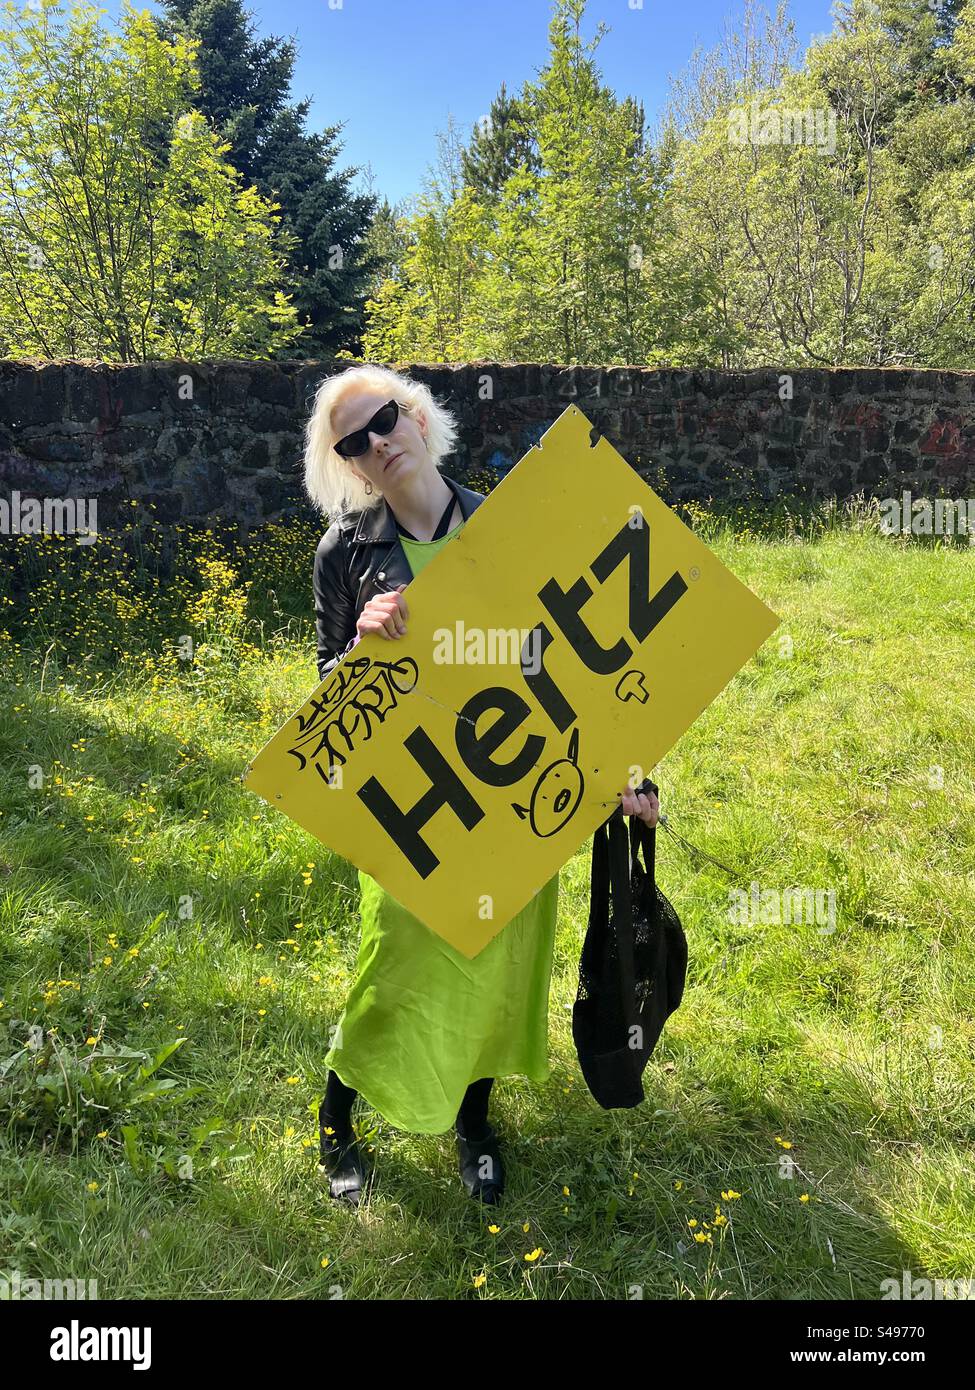 Oggetto trovato, cartellone Hertz auto a noleggio in alluminio i. Öskjuhlíð, Reykjavik. Islanda. Il cartello ha dei graffiti ed è sorretto da una signora in abito verde elettrico . Foto Stock